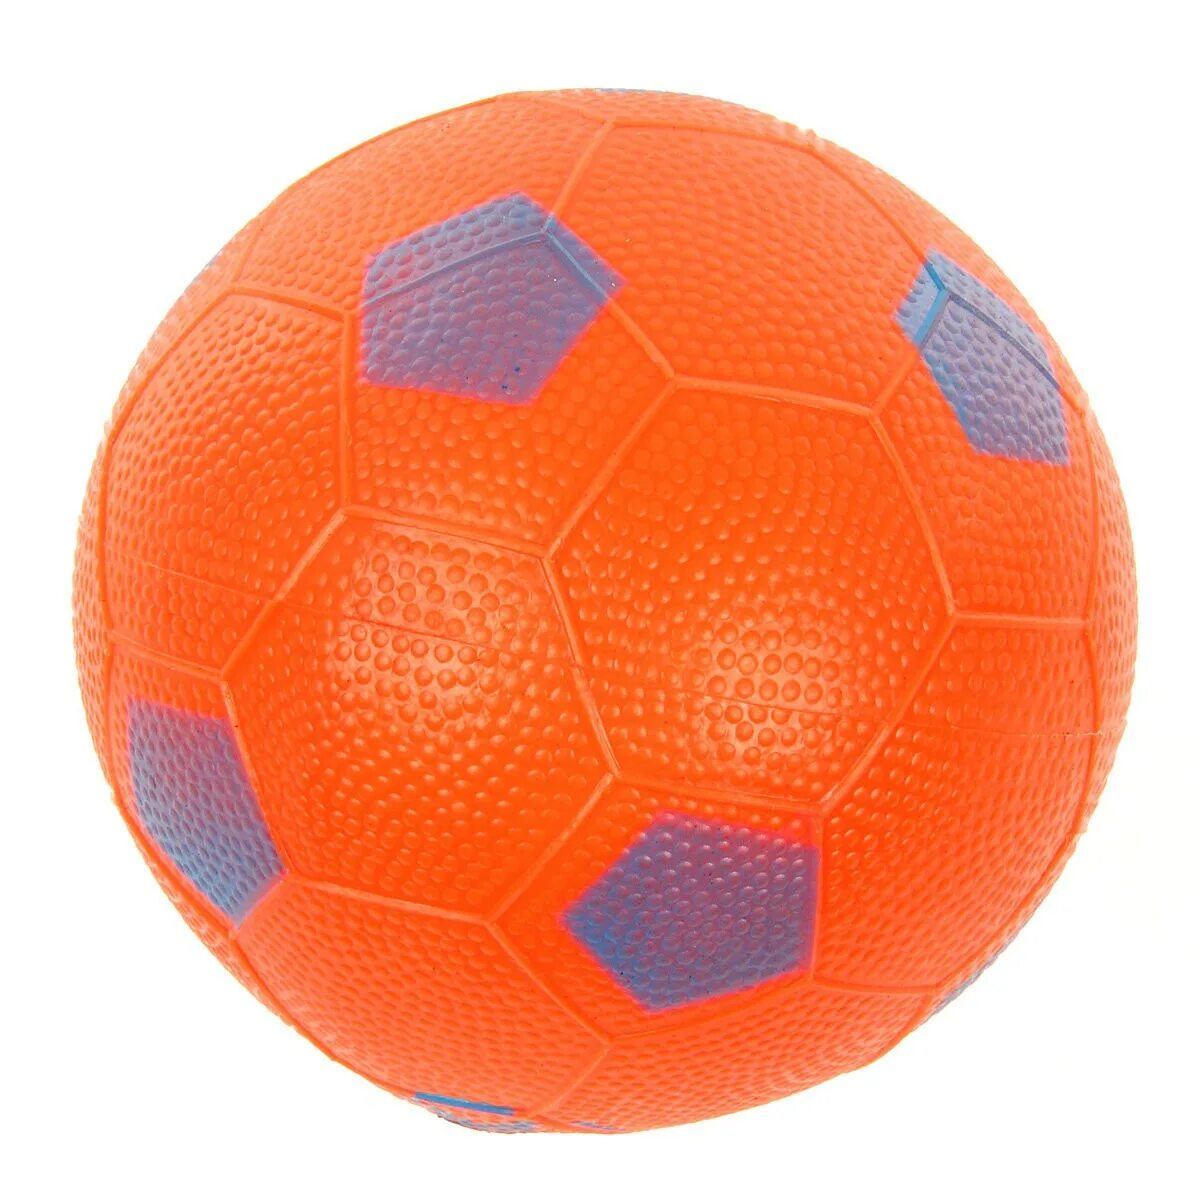 Мяч-прыгун, 45 см, veld co. Мяч veld co 101890 футбольный. Мячики для детей. Мячи детские. Купи мяч ребенку